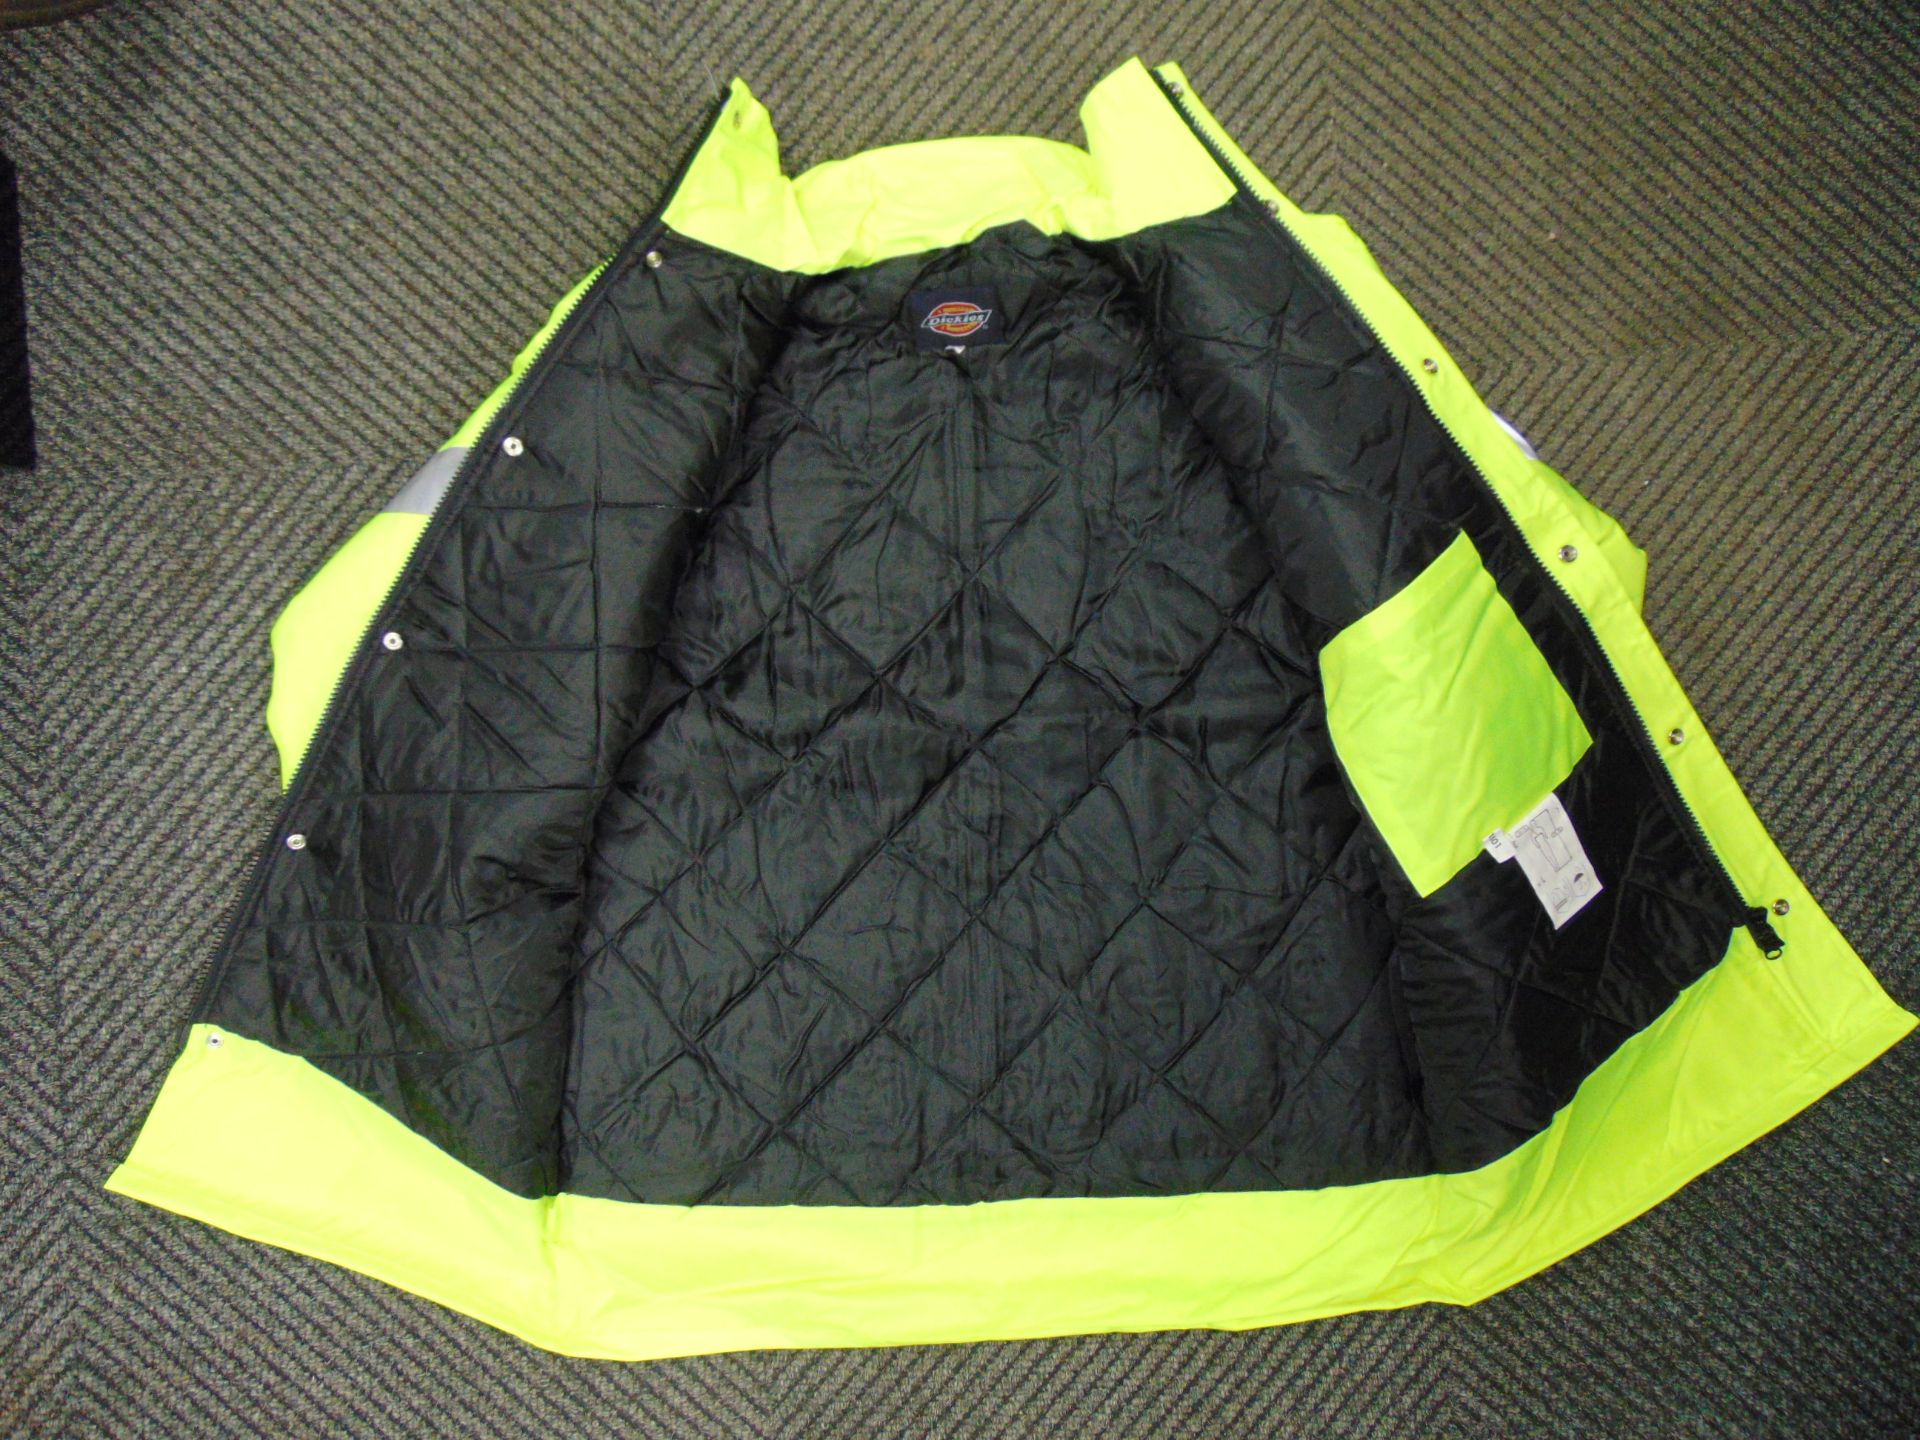 UNISSUED Hi Visibility Florescent Jacket. Size XLarge. - Image 2 of 5